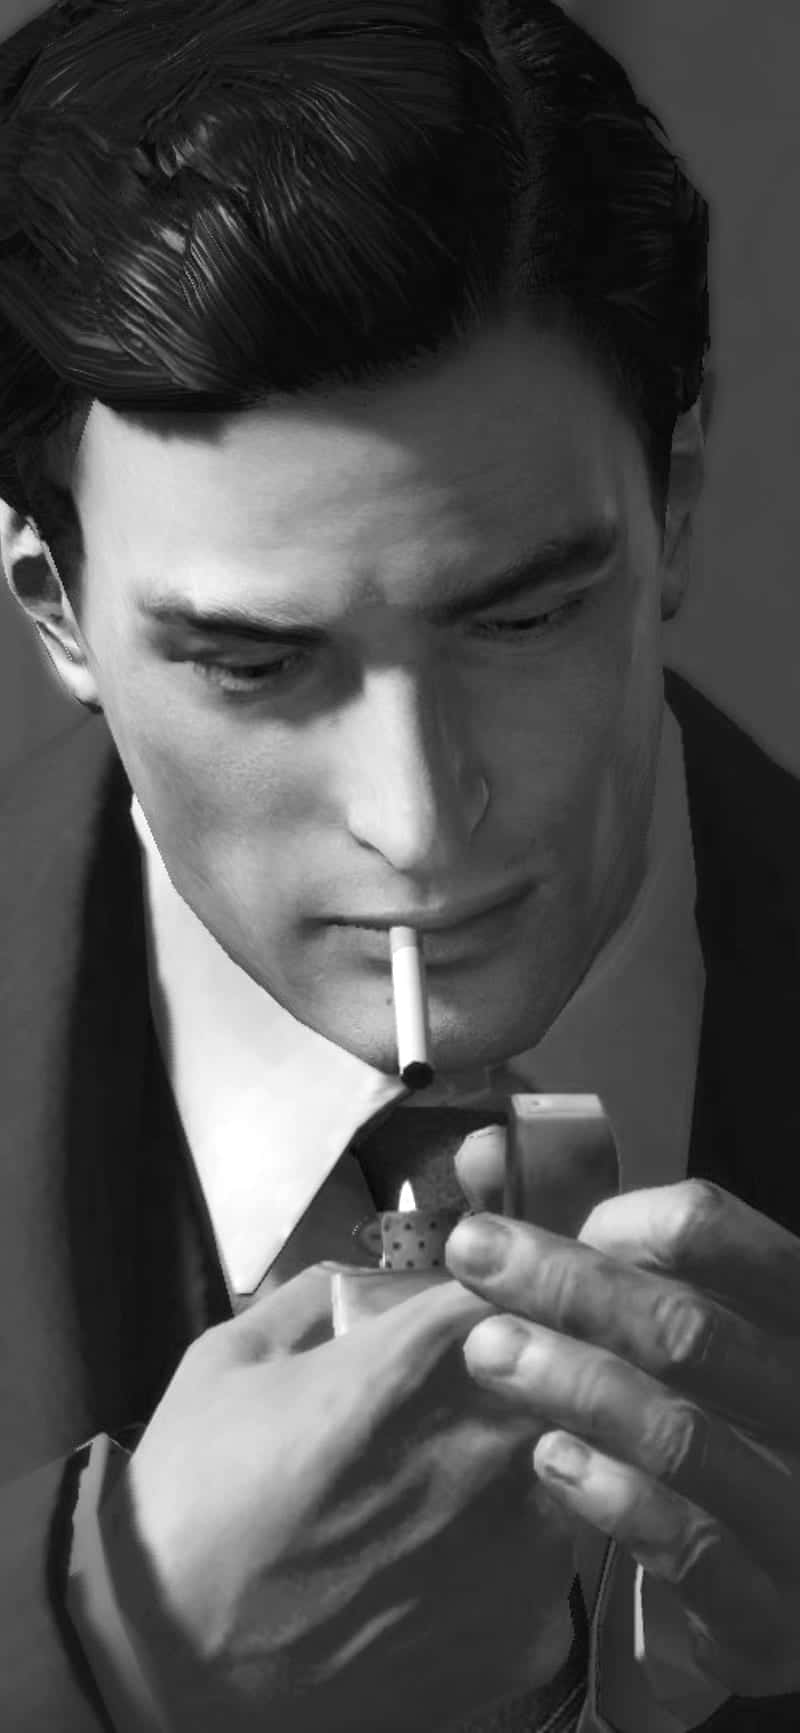 Einmann Im Anzug Raucht Eine Zigarette. Wallpaper